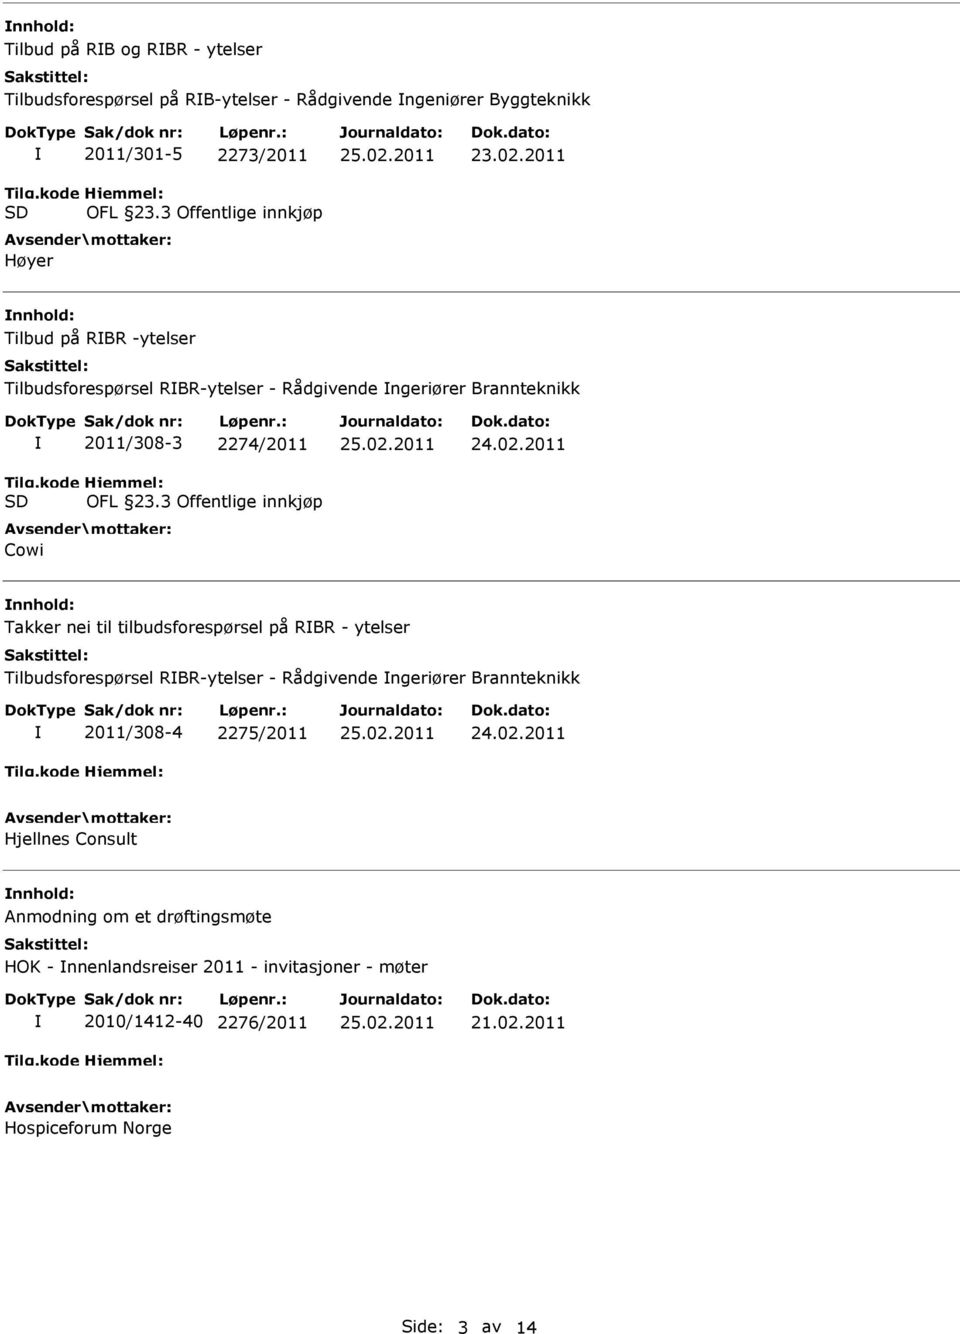 tilbudsforespørsel på RBR - ytelser Tilbudsforespørsel RBR-ytelser - Rådgivende ngeriører Brannteknikk 2011/308-4 2275/2011 Hjellnes